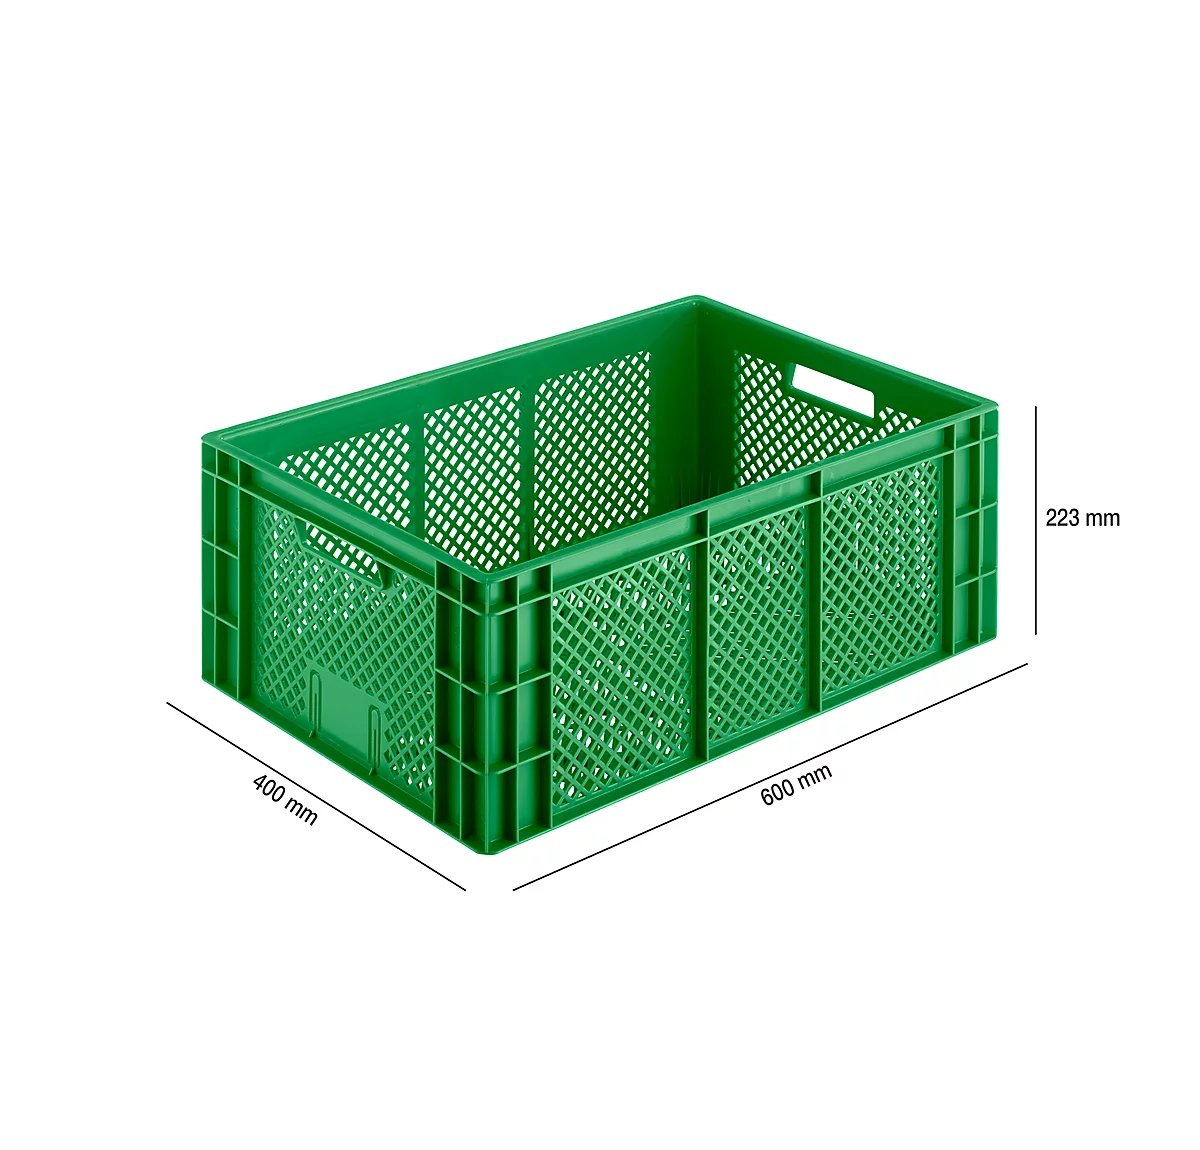 Caja para frutas y verduras Euro Box, apta para alimentos, capacidad 47,9 litros, versión calada, verde